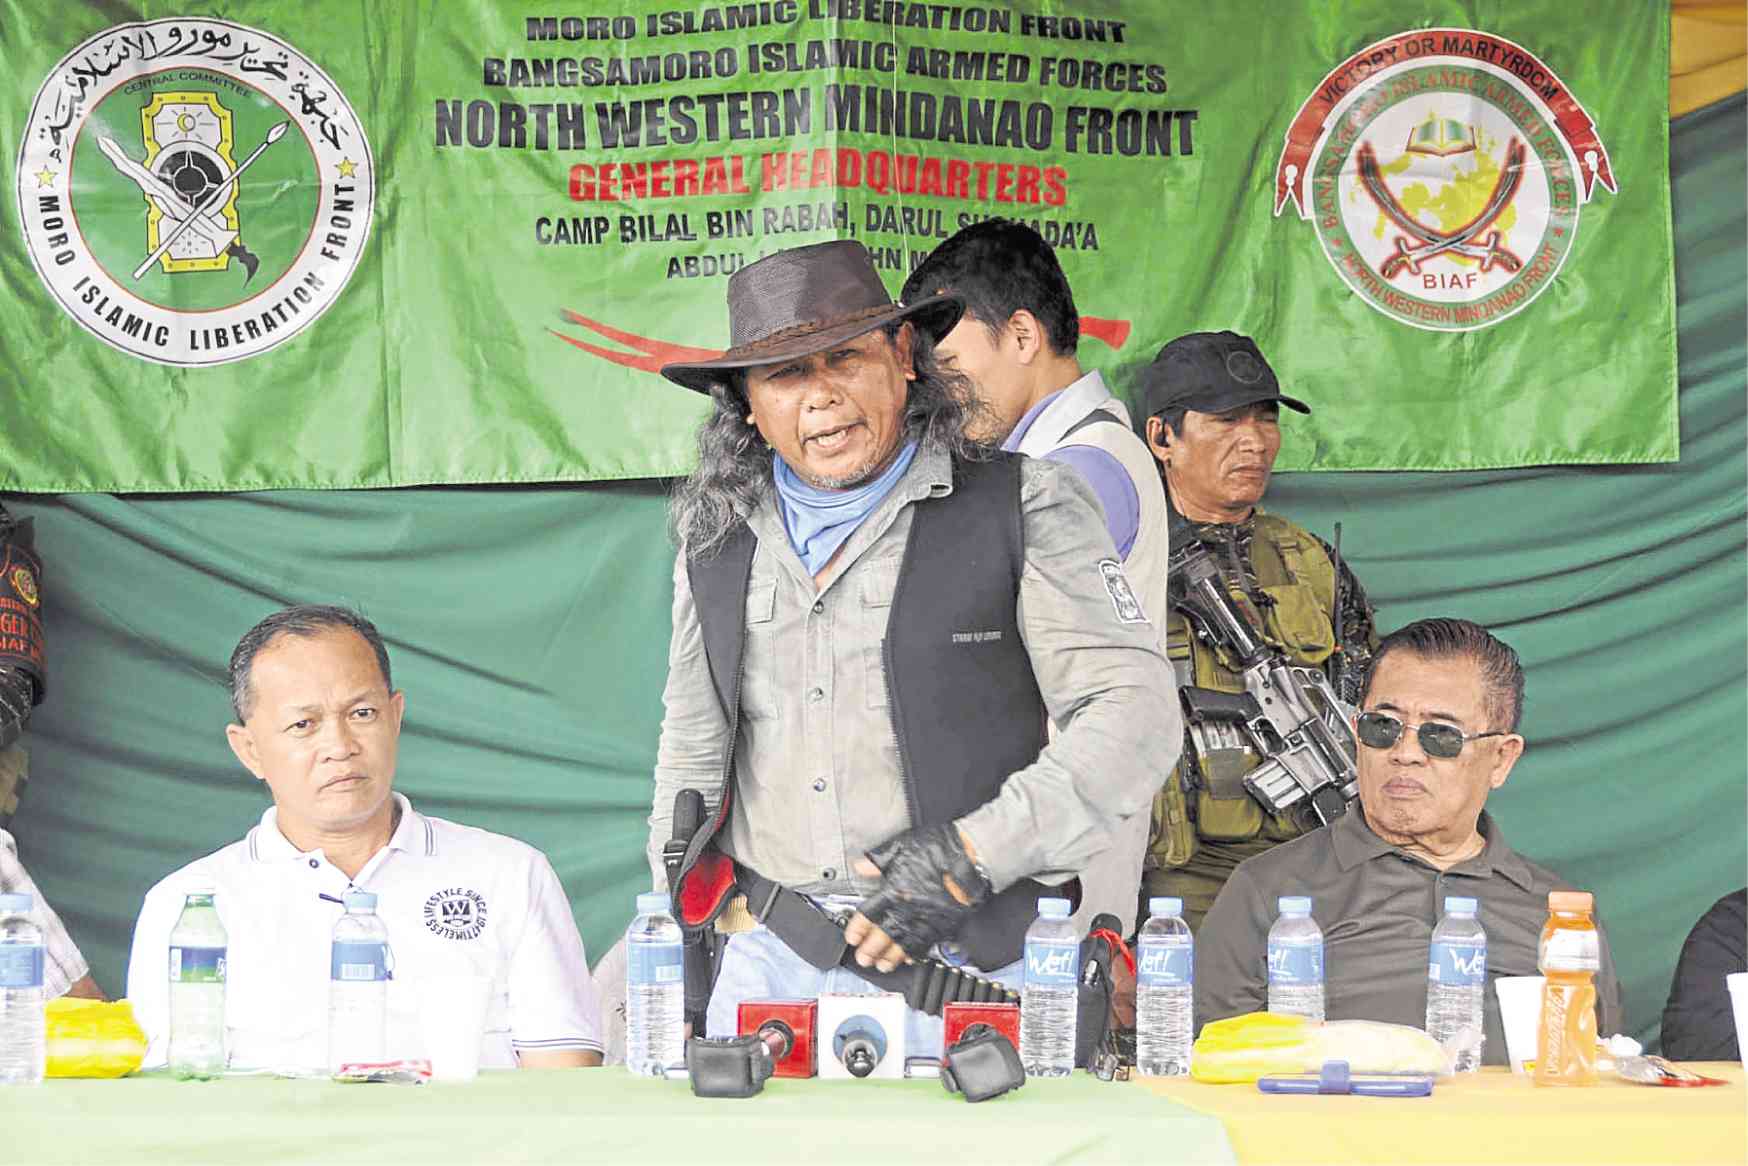 Dimaporo to MILF leader: Respect Lanao del Norte ‘no’ vote